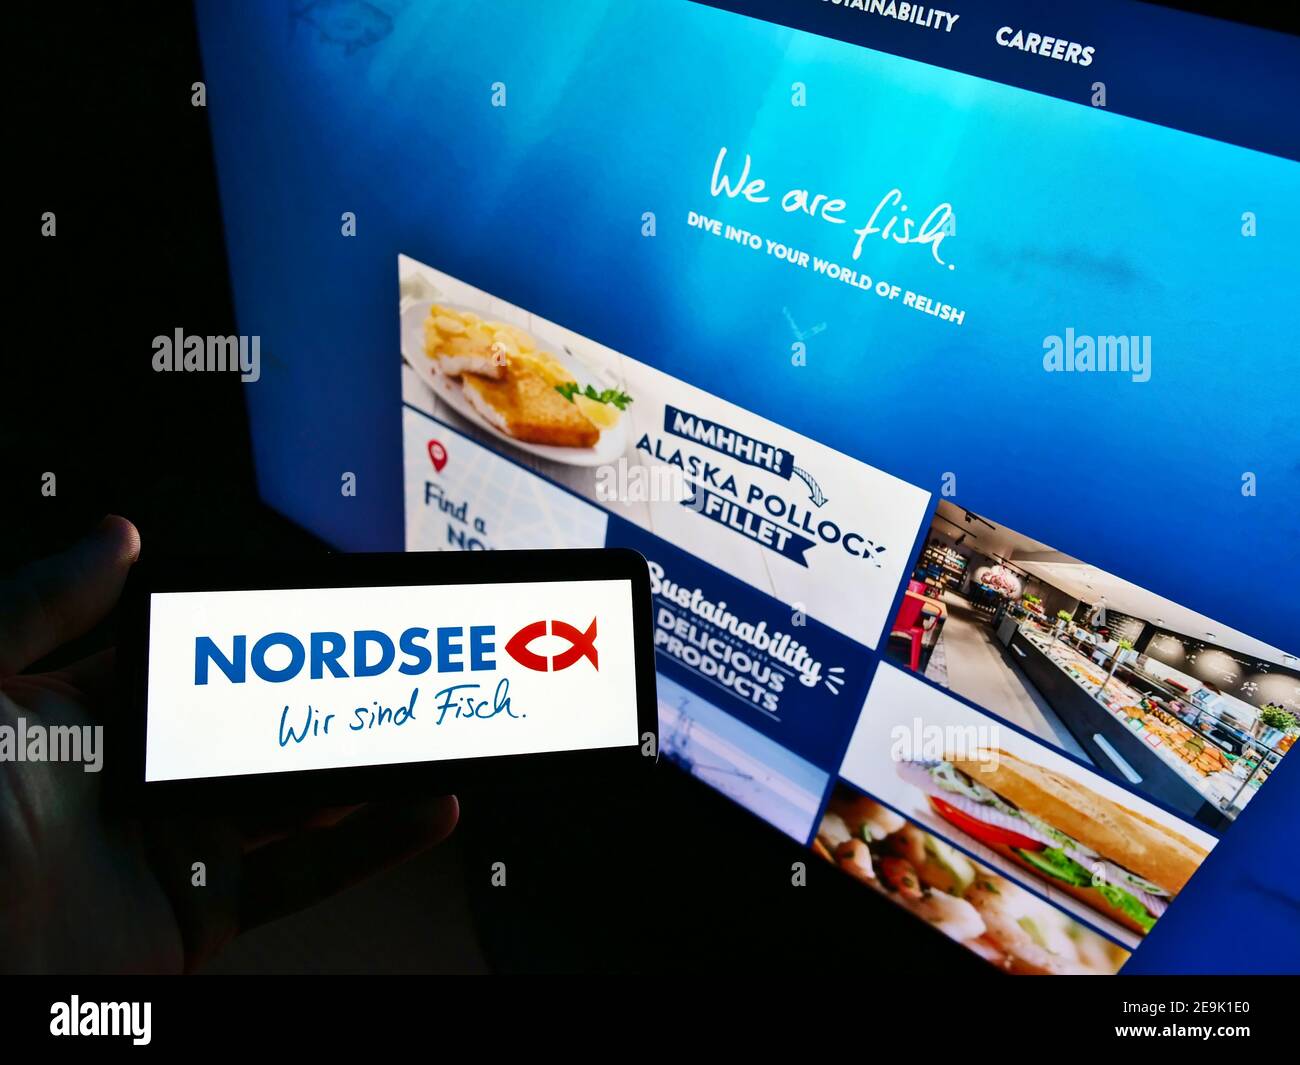 Persona in possesso di smartphone con il logo della catena di ristoranti tedesco di fast food Nordsee GmbH in esposizione davanti al sito Web aziendale. Mettere a fuoco lo schermo del telefono. Foto Stock